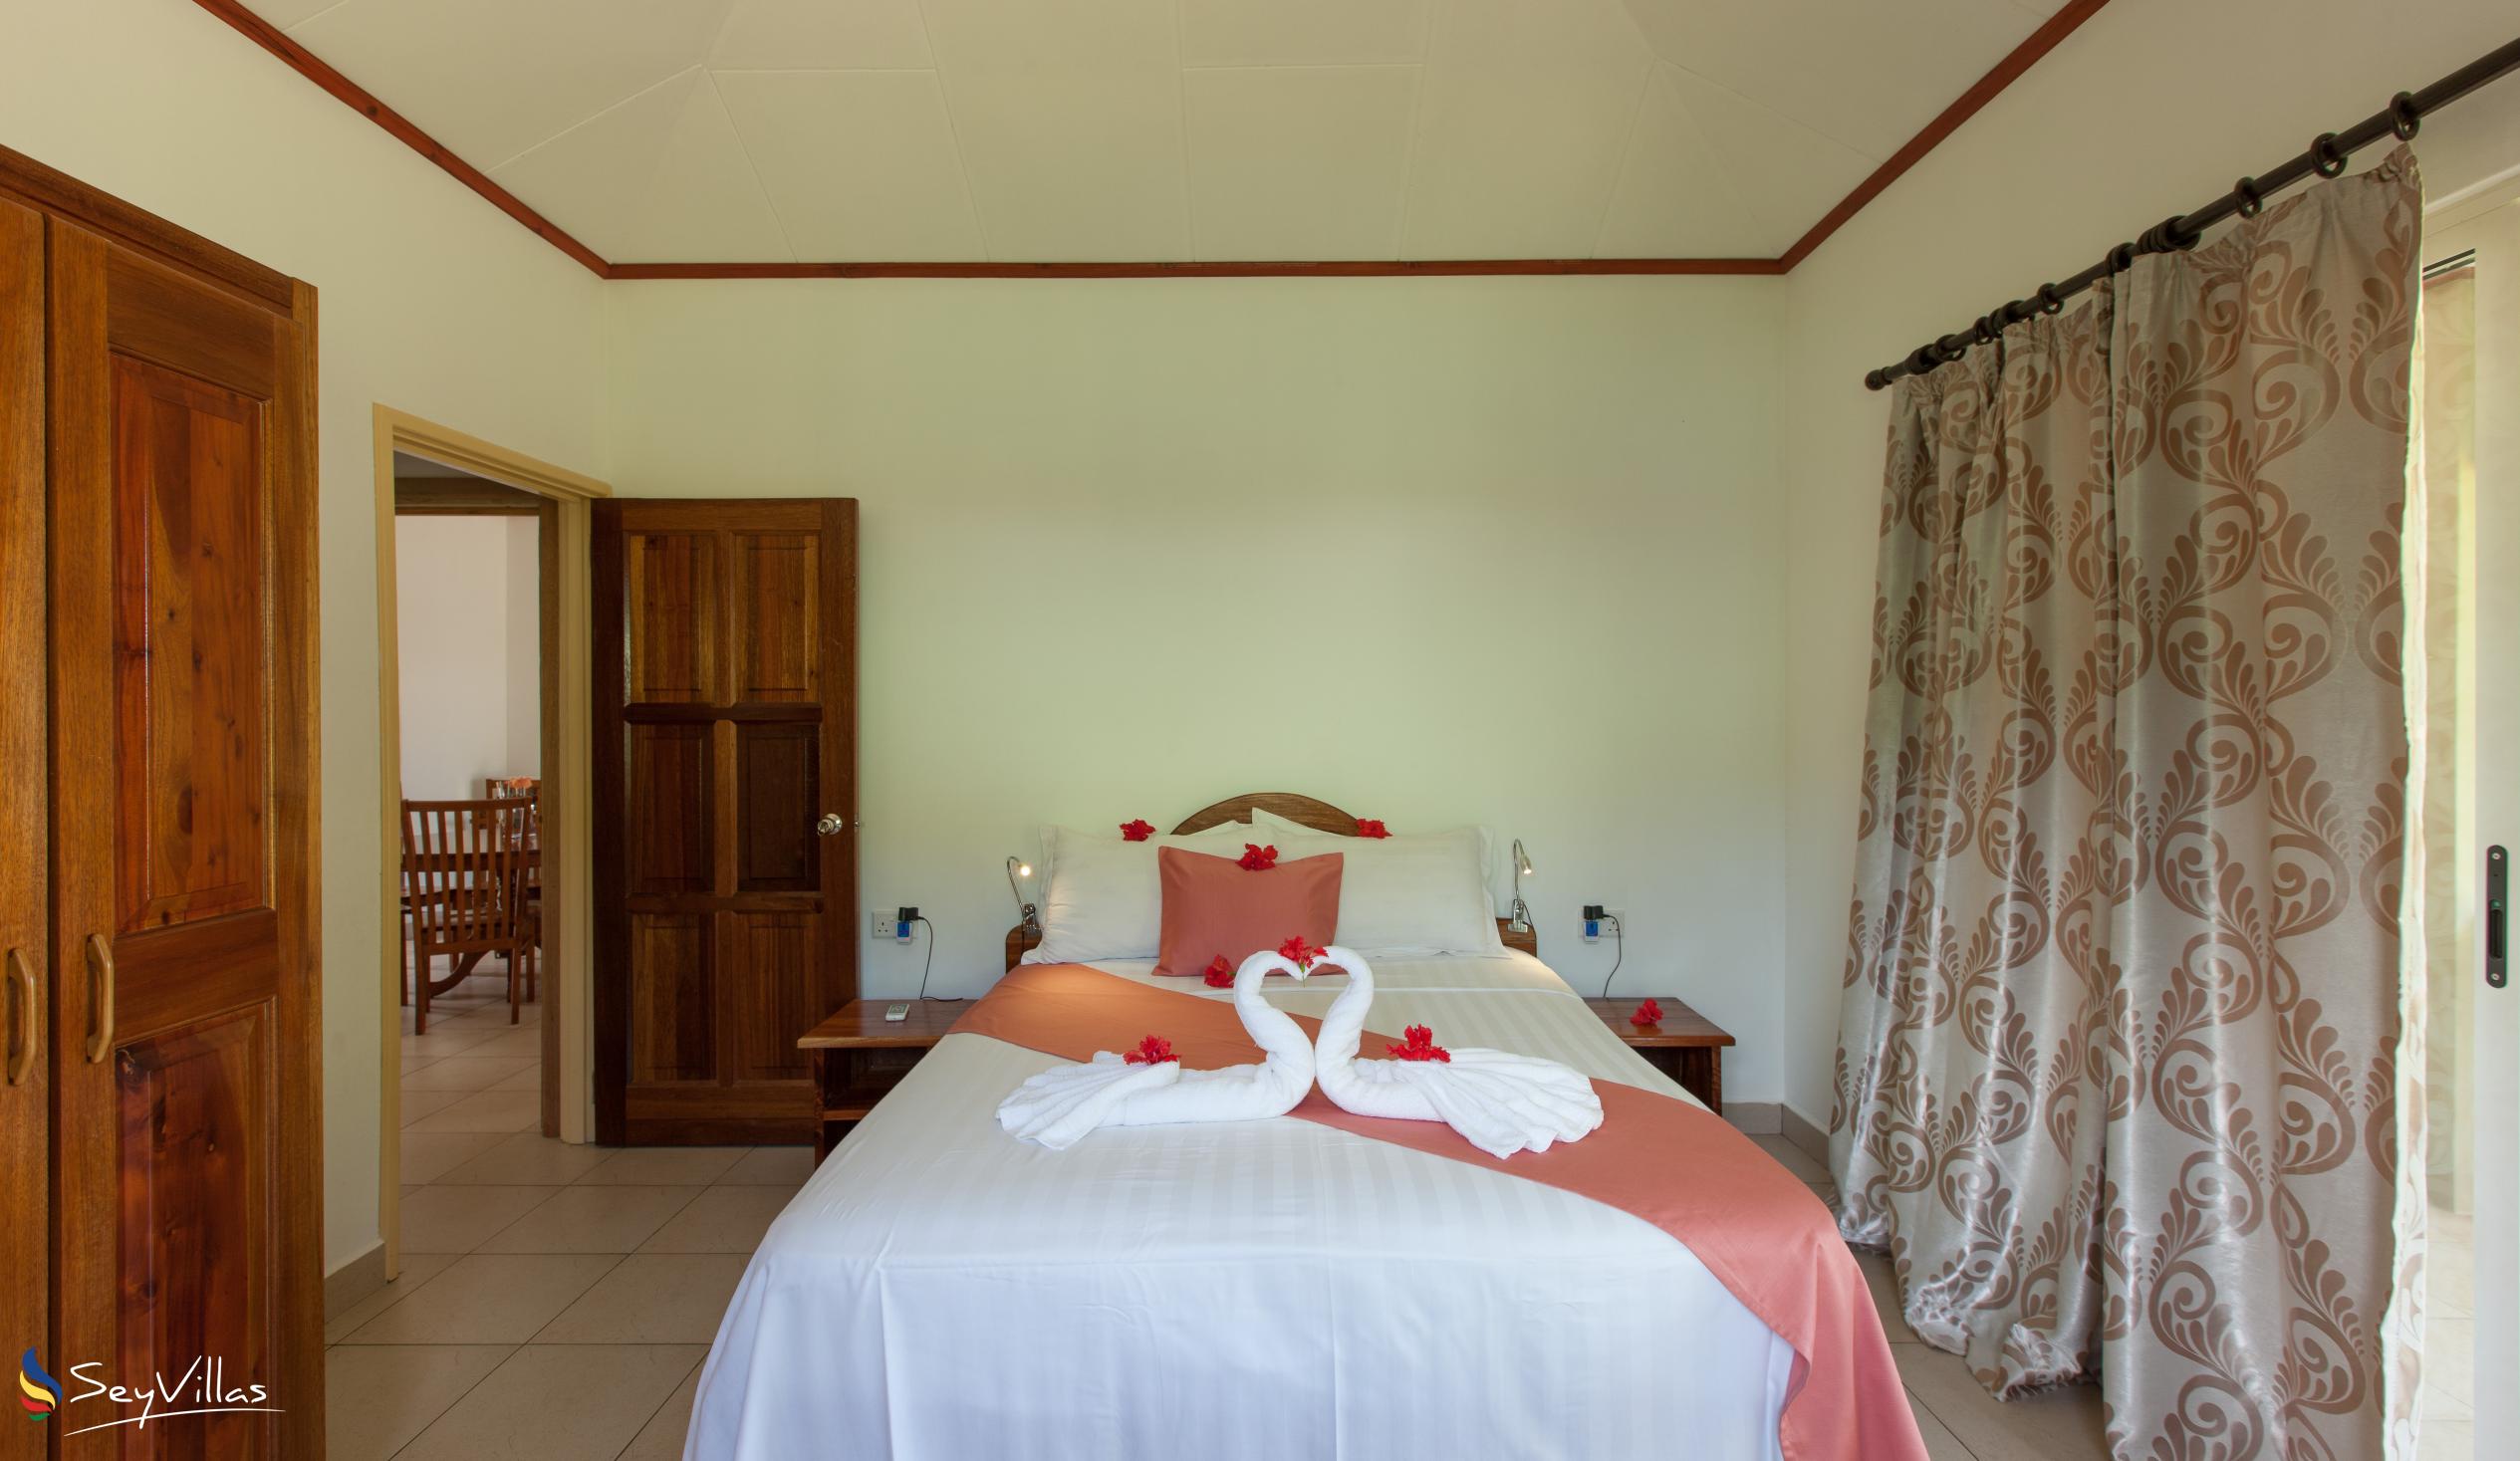 Foto 26: Hostellerie La Digue - Chalet mit 3 Schlafzimmern - La Digue (Seychellen)